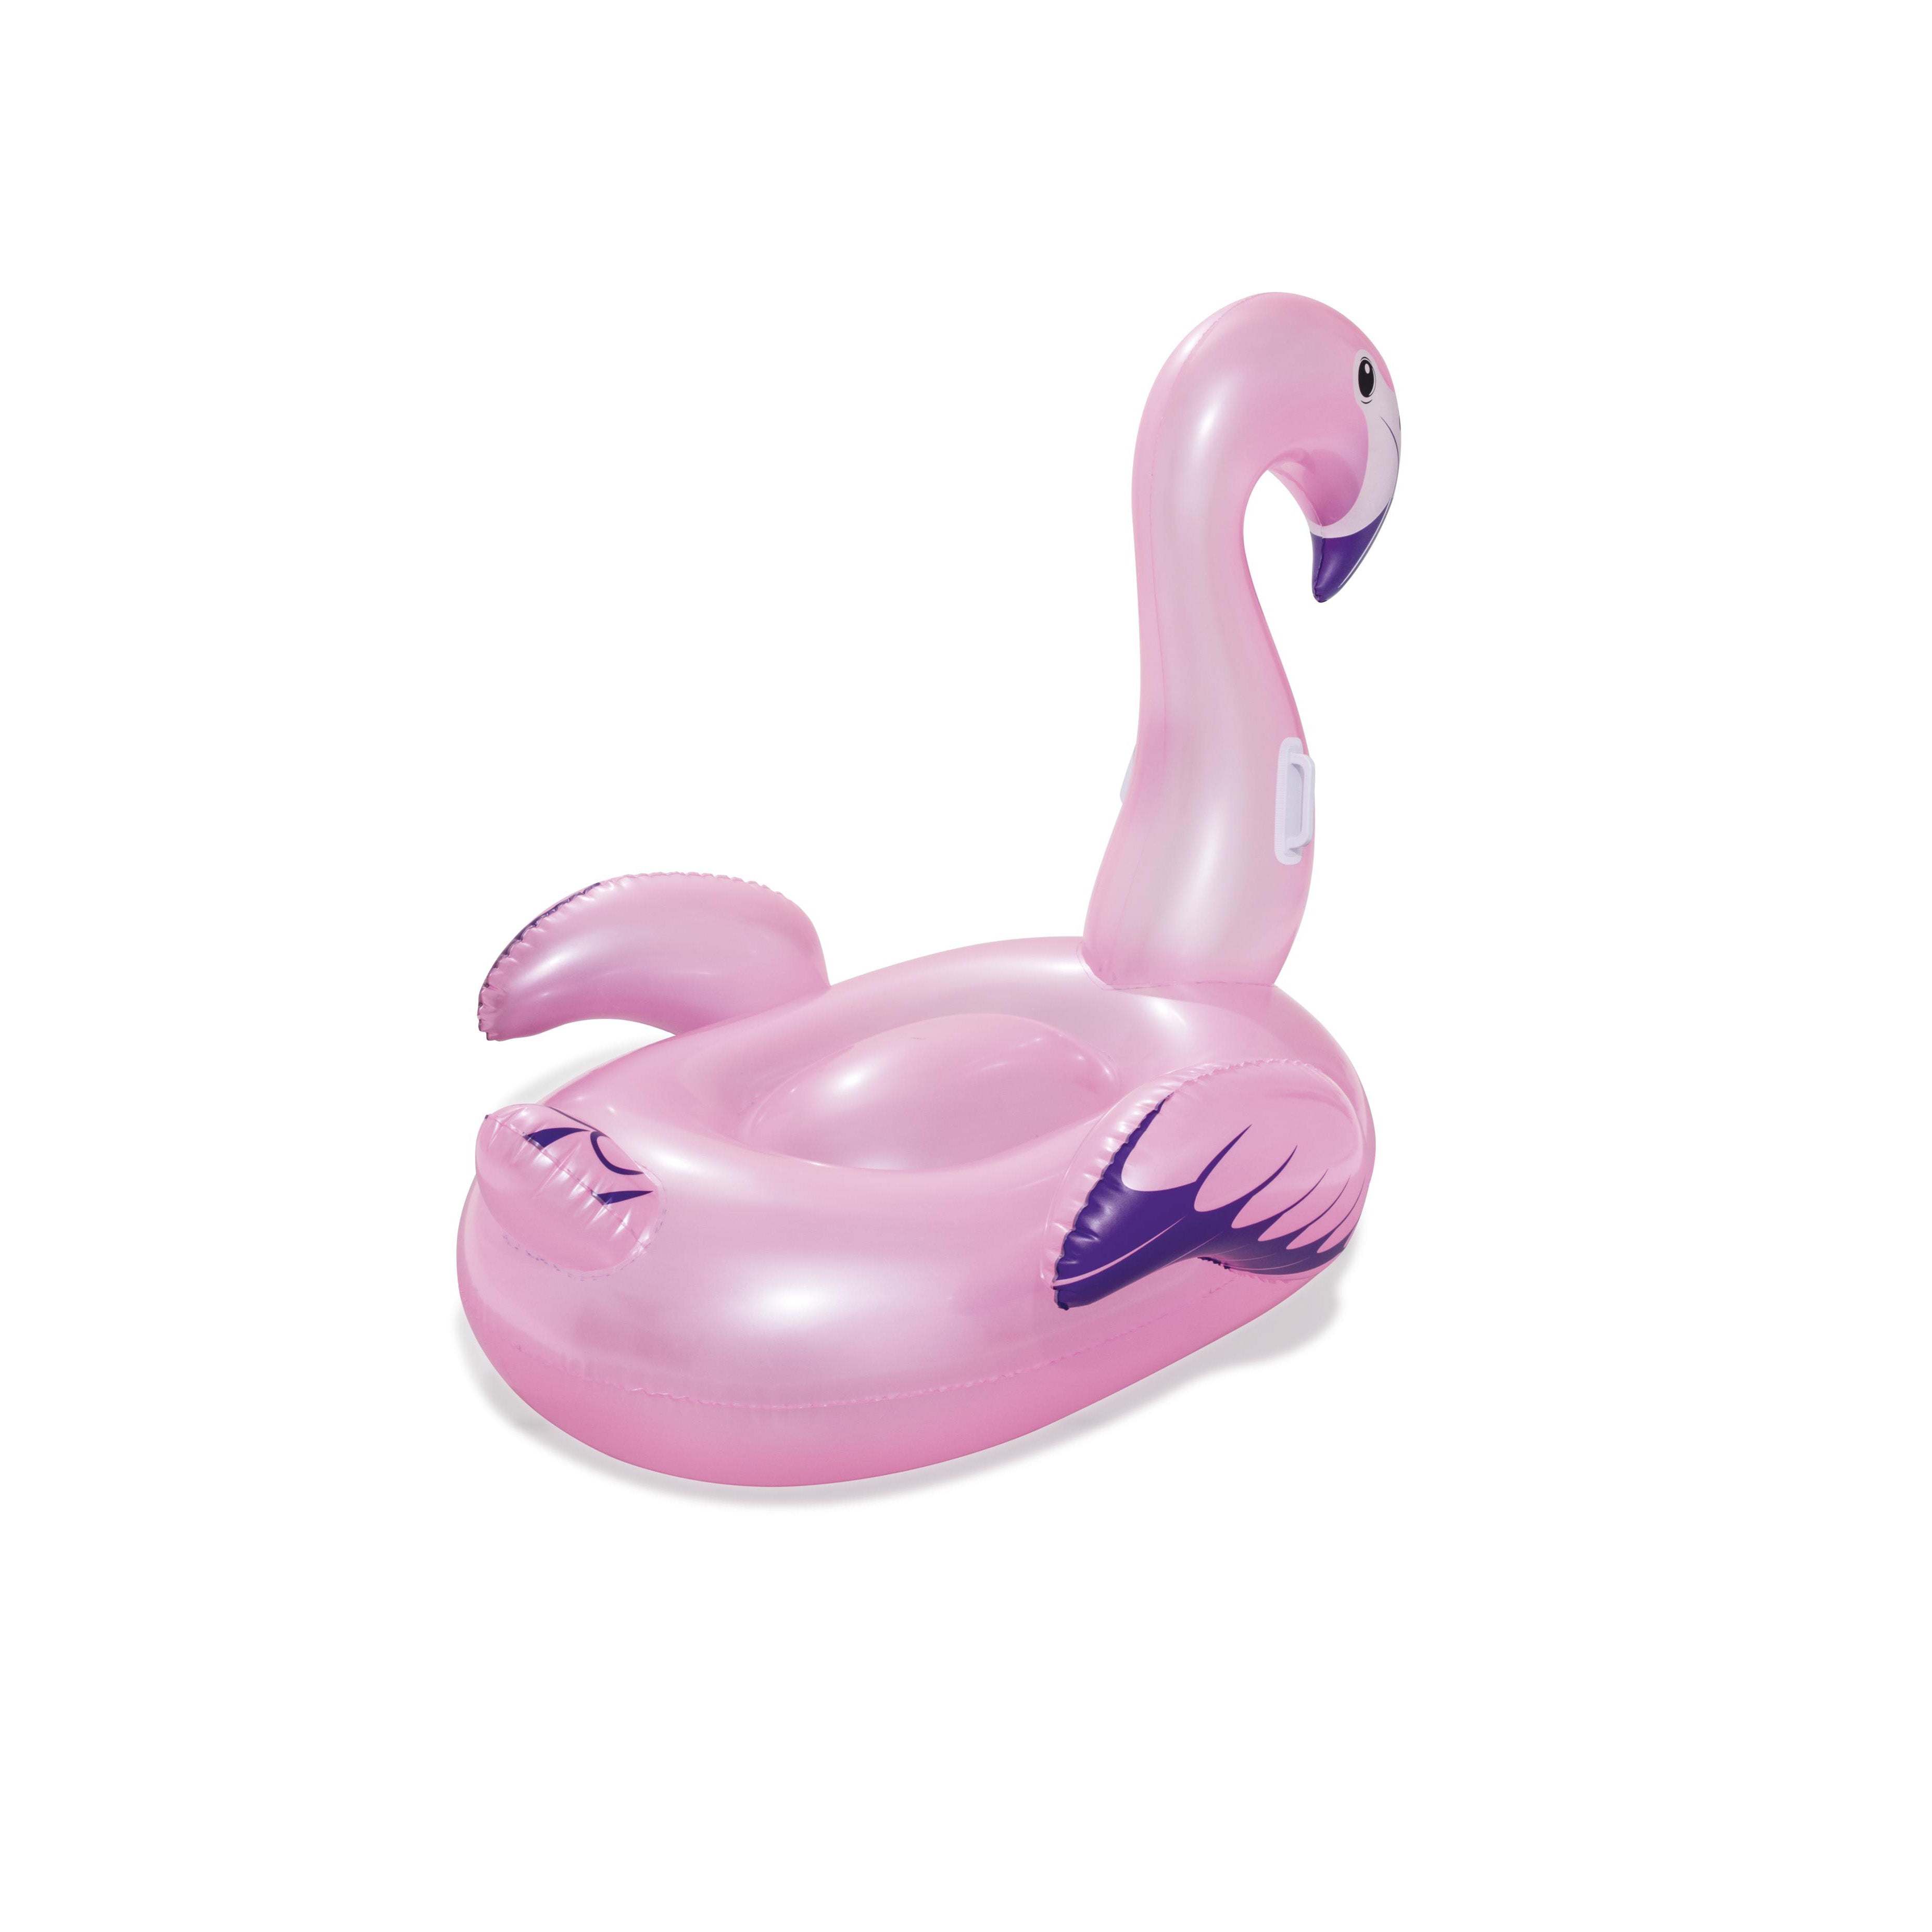 Schwimmtier Flamingo